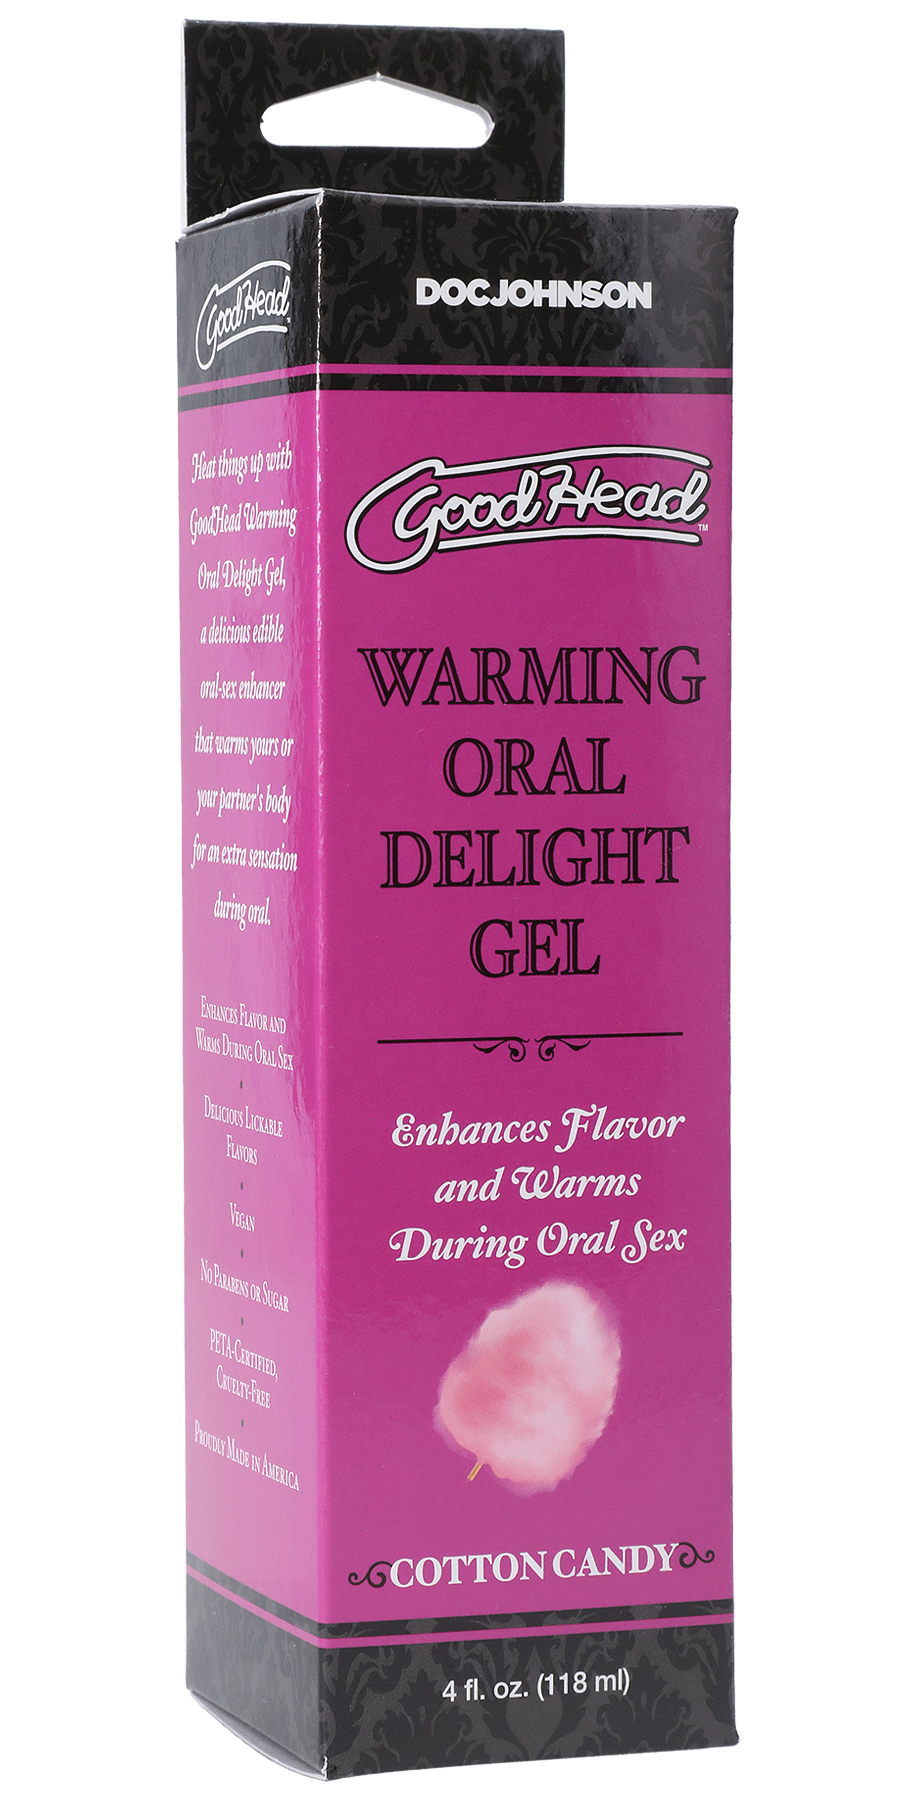 Goodhead - Warming Oral Delight Gel - Cotton Candy - 4 Fl. Oz. DJ1361-15-BX